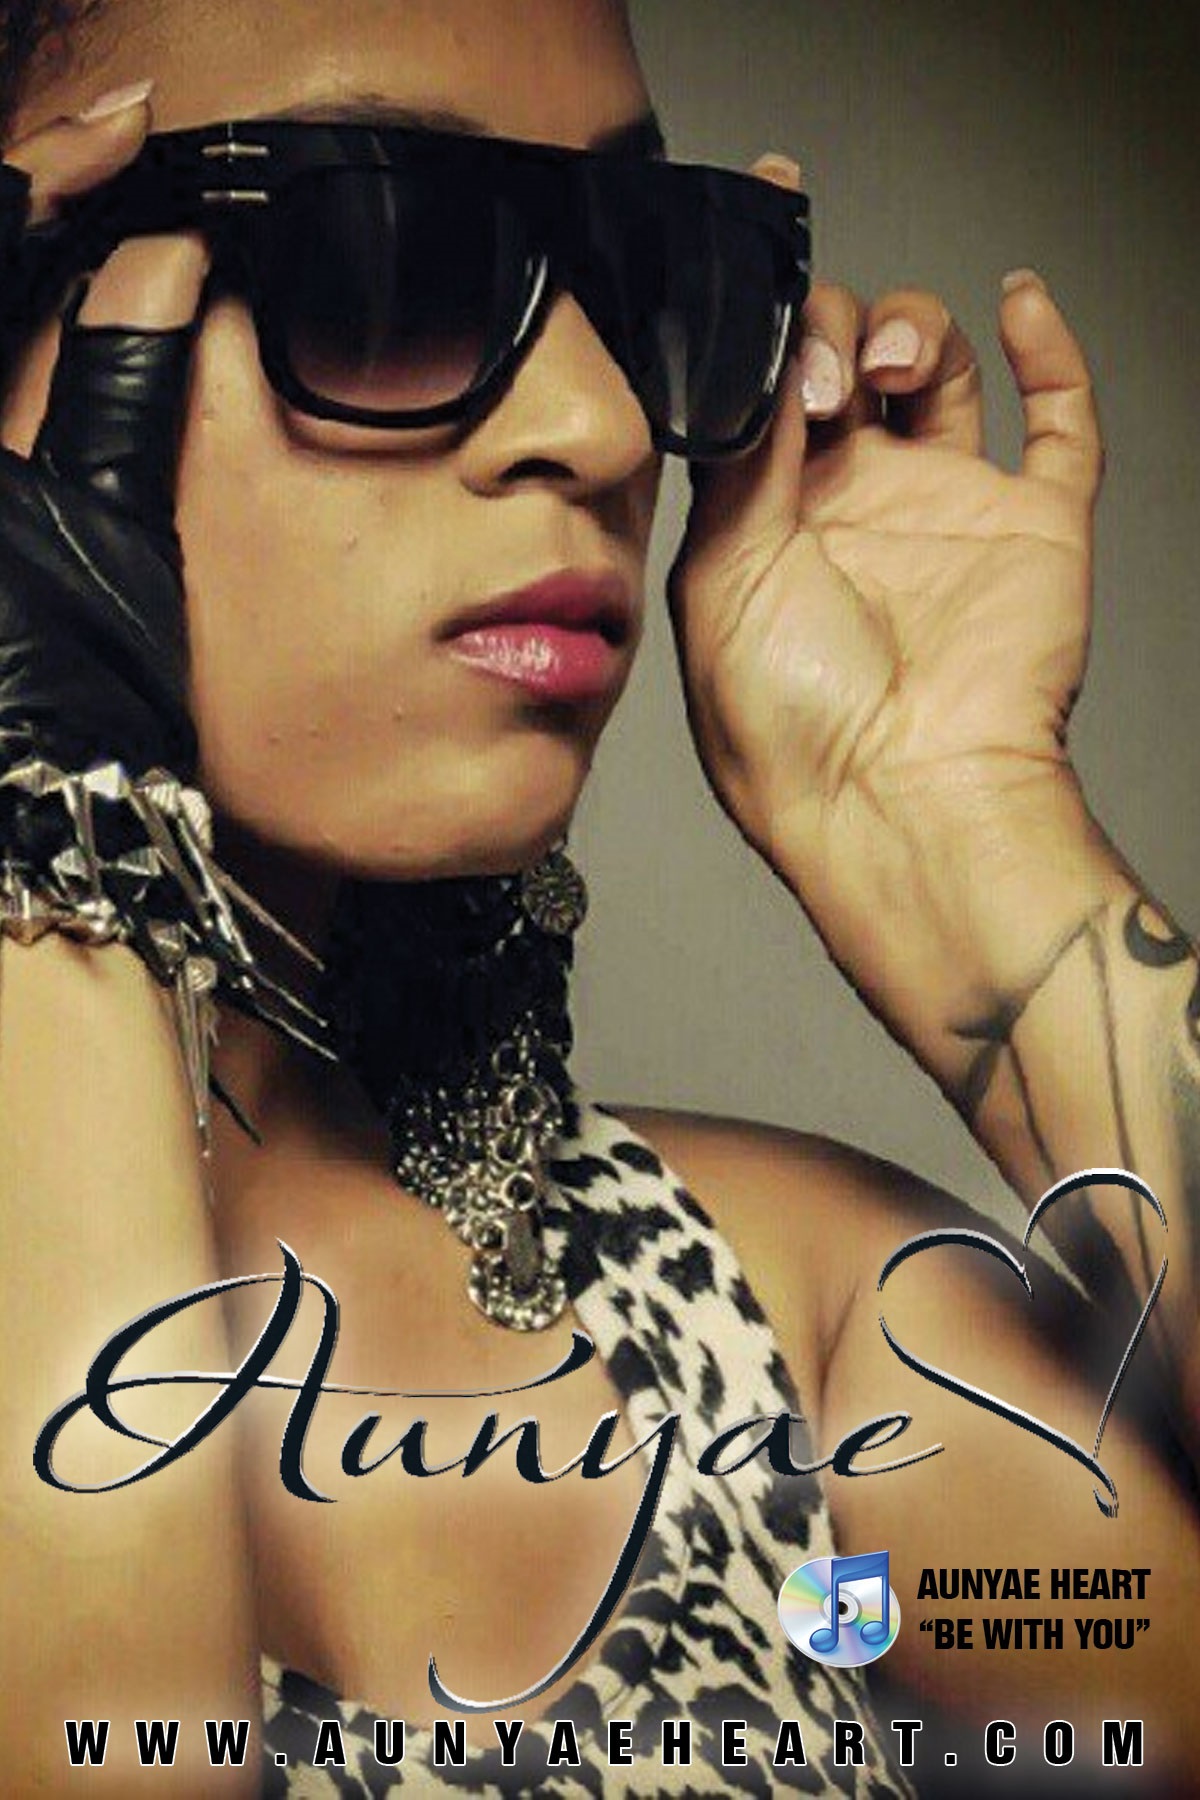 Aunyae Heart - R&B Singer, Songwriter, Producer